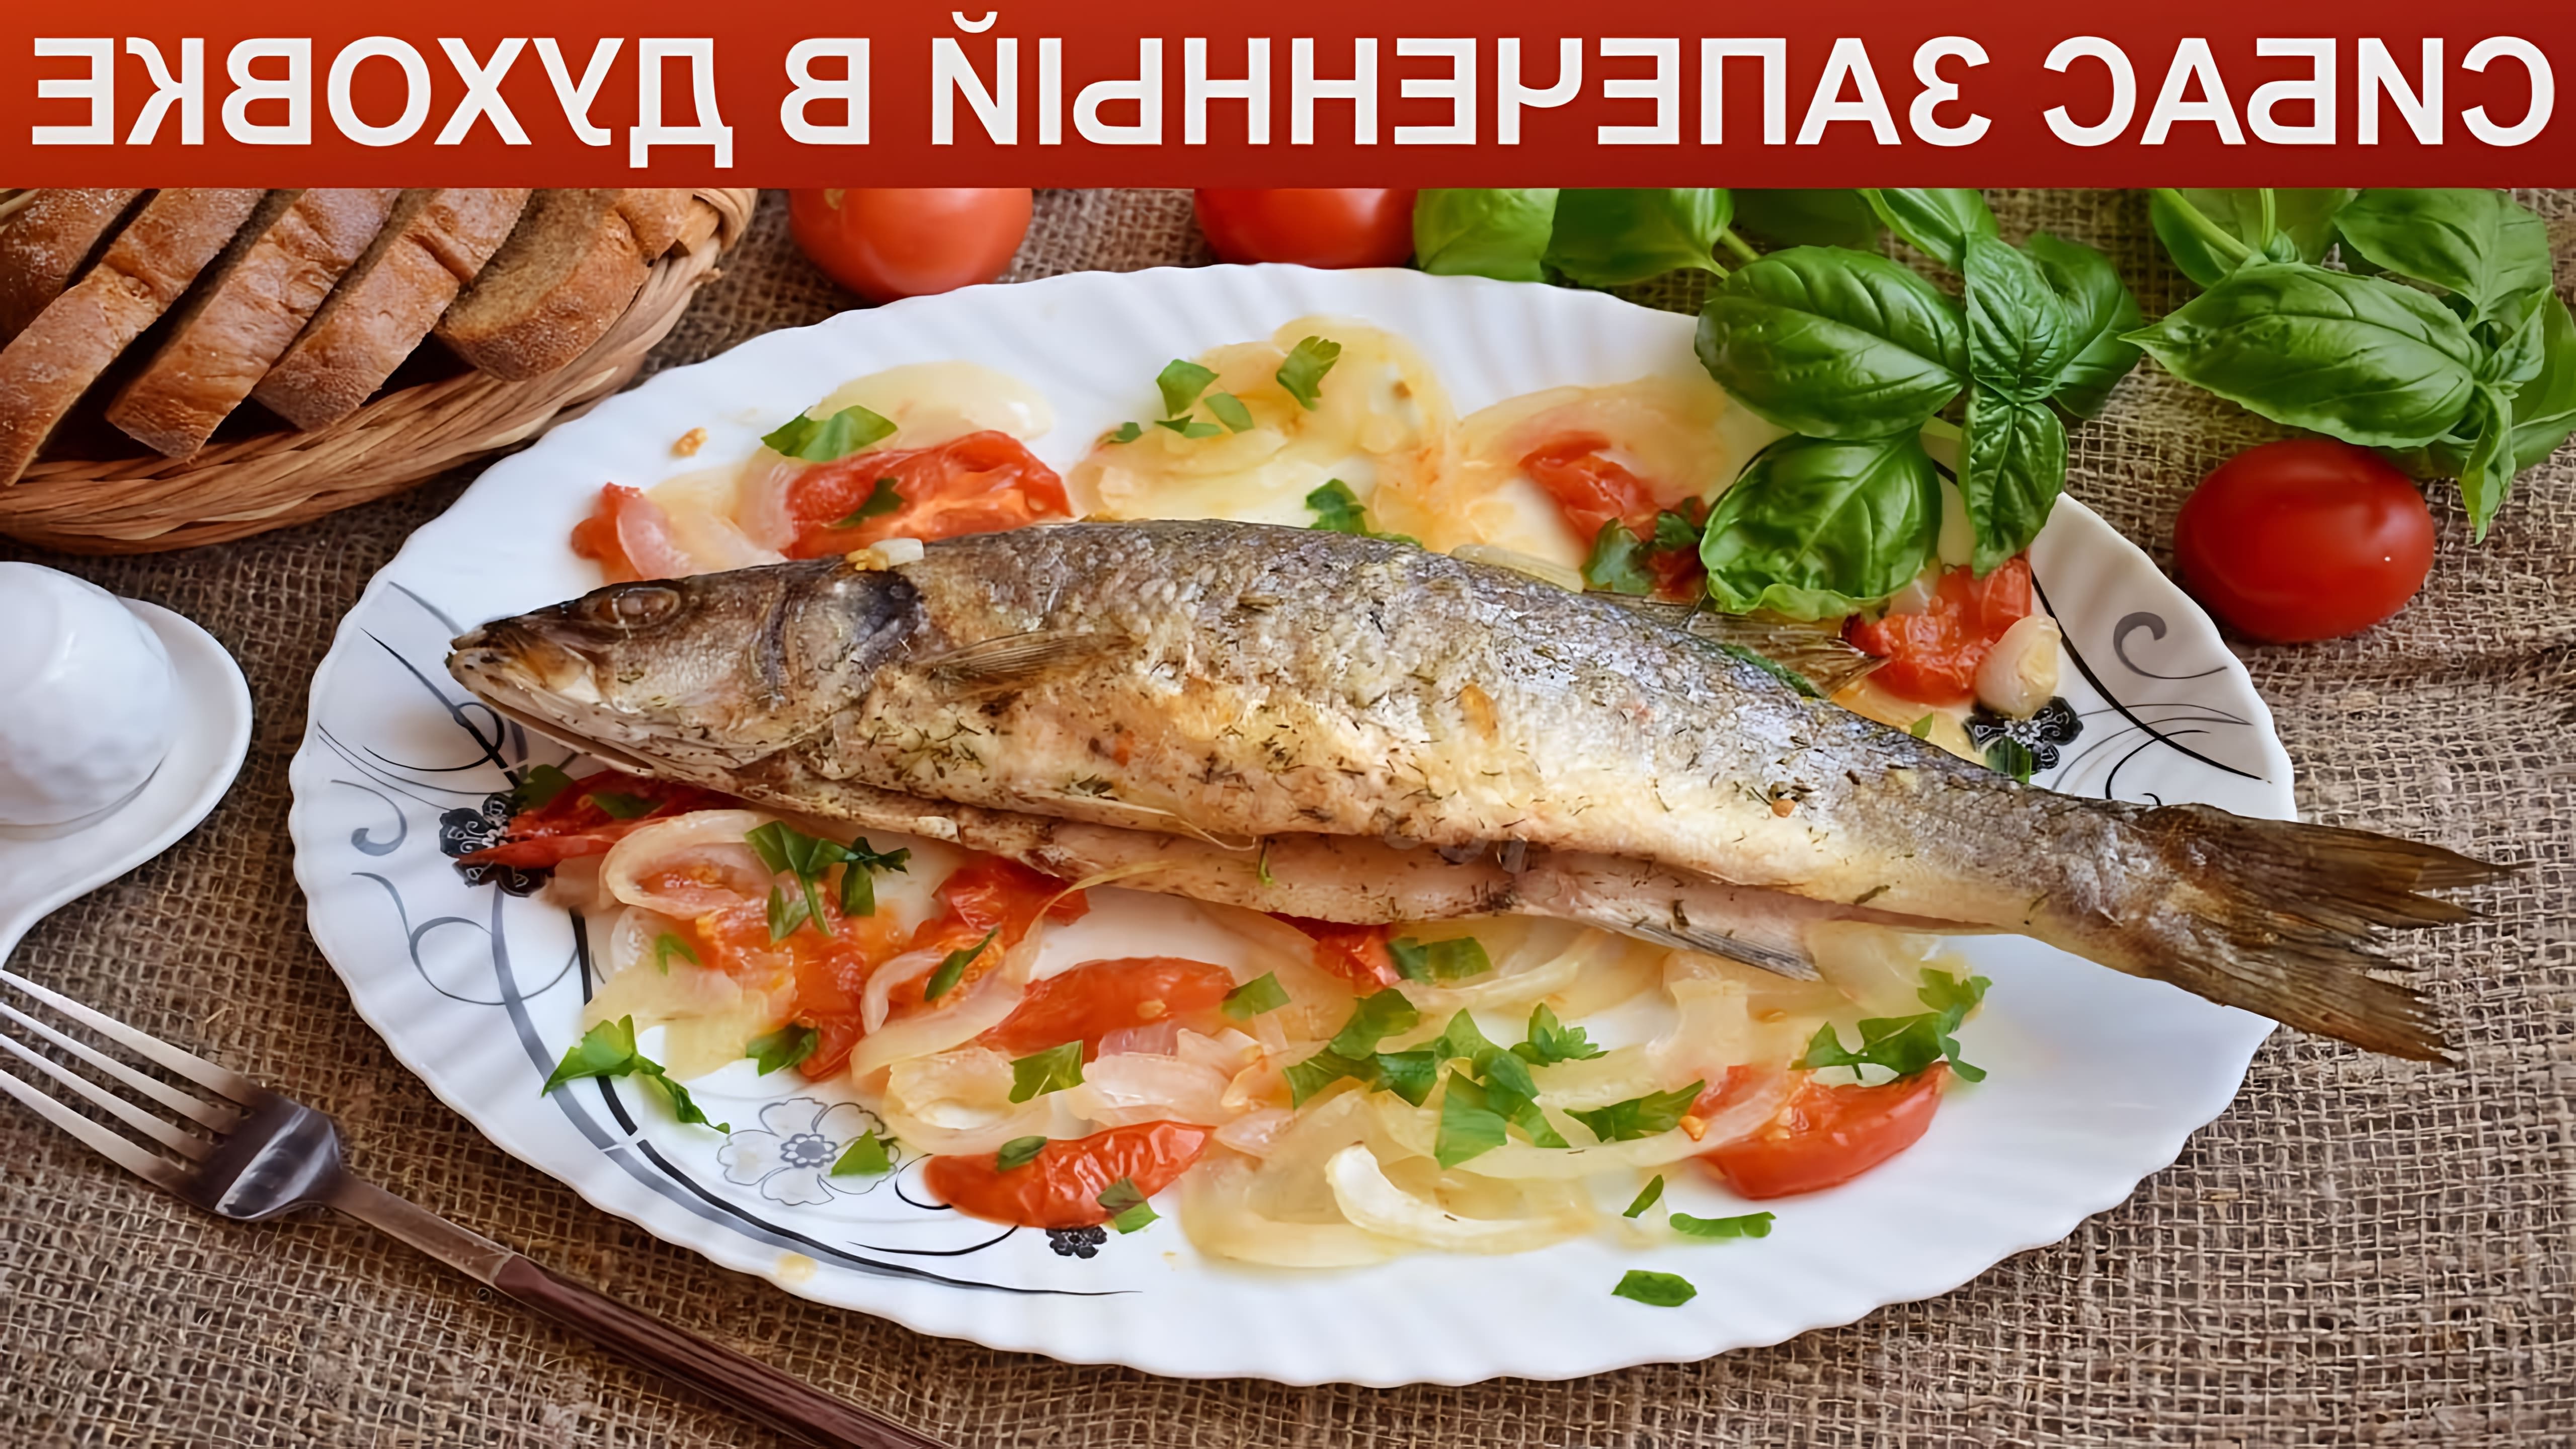 Порционное рыбное блюдо, практически без костей. Запеченного в духовке сибаса можно приготовить к обеду или ужину. 